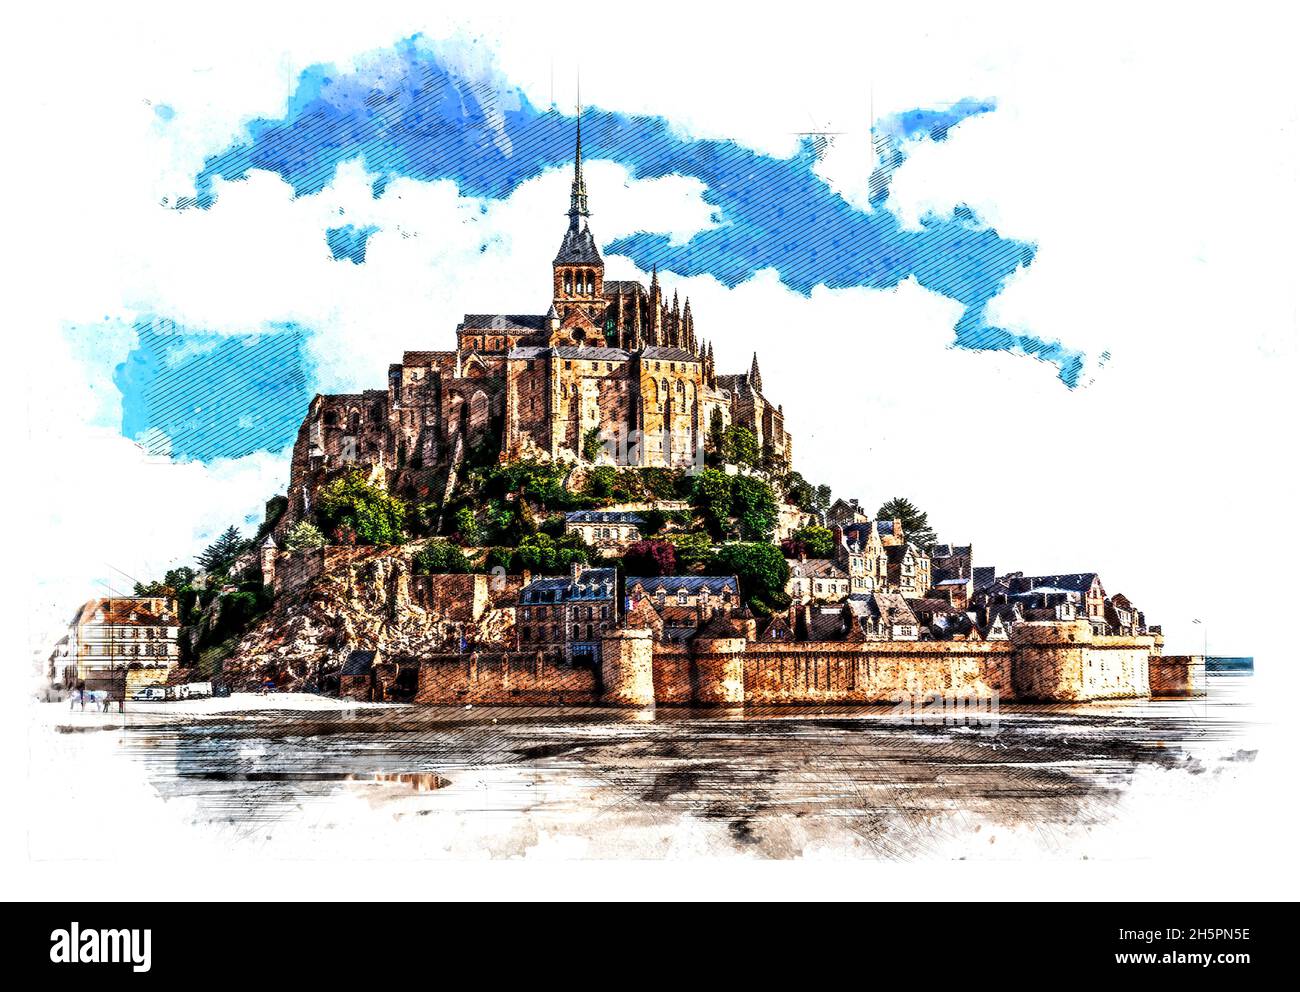 Malerischer Blick auf den Mont Saint Michel. Die Insel Le Mont Saint Michel, eine der meistbesuchten historischen Stätten Frankreichs. Illustration des künstlerischen Stils. Stockfoto